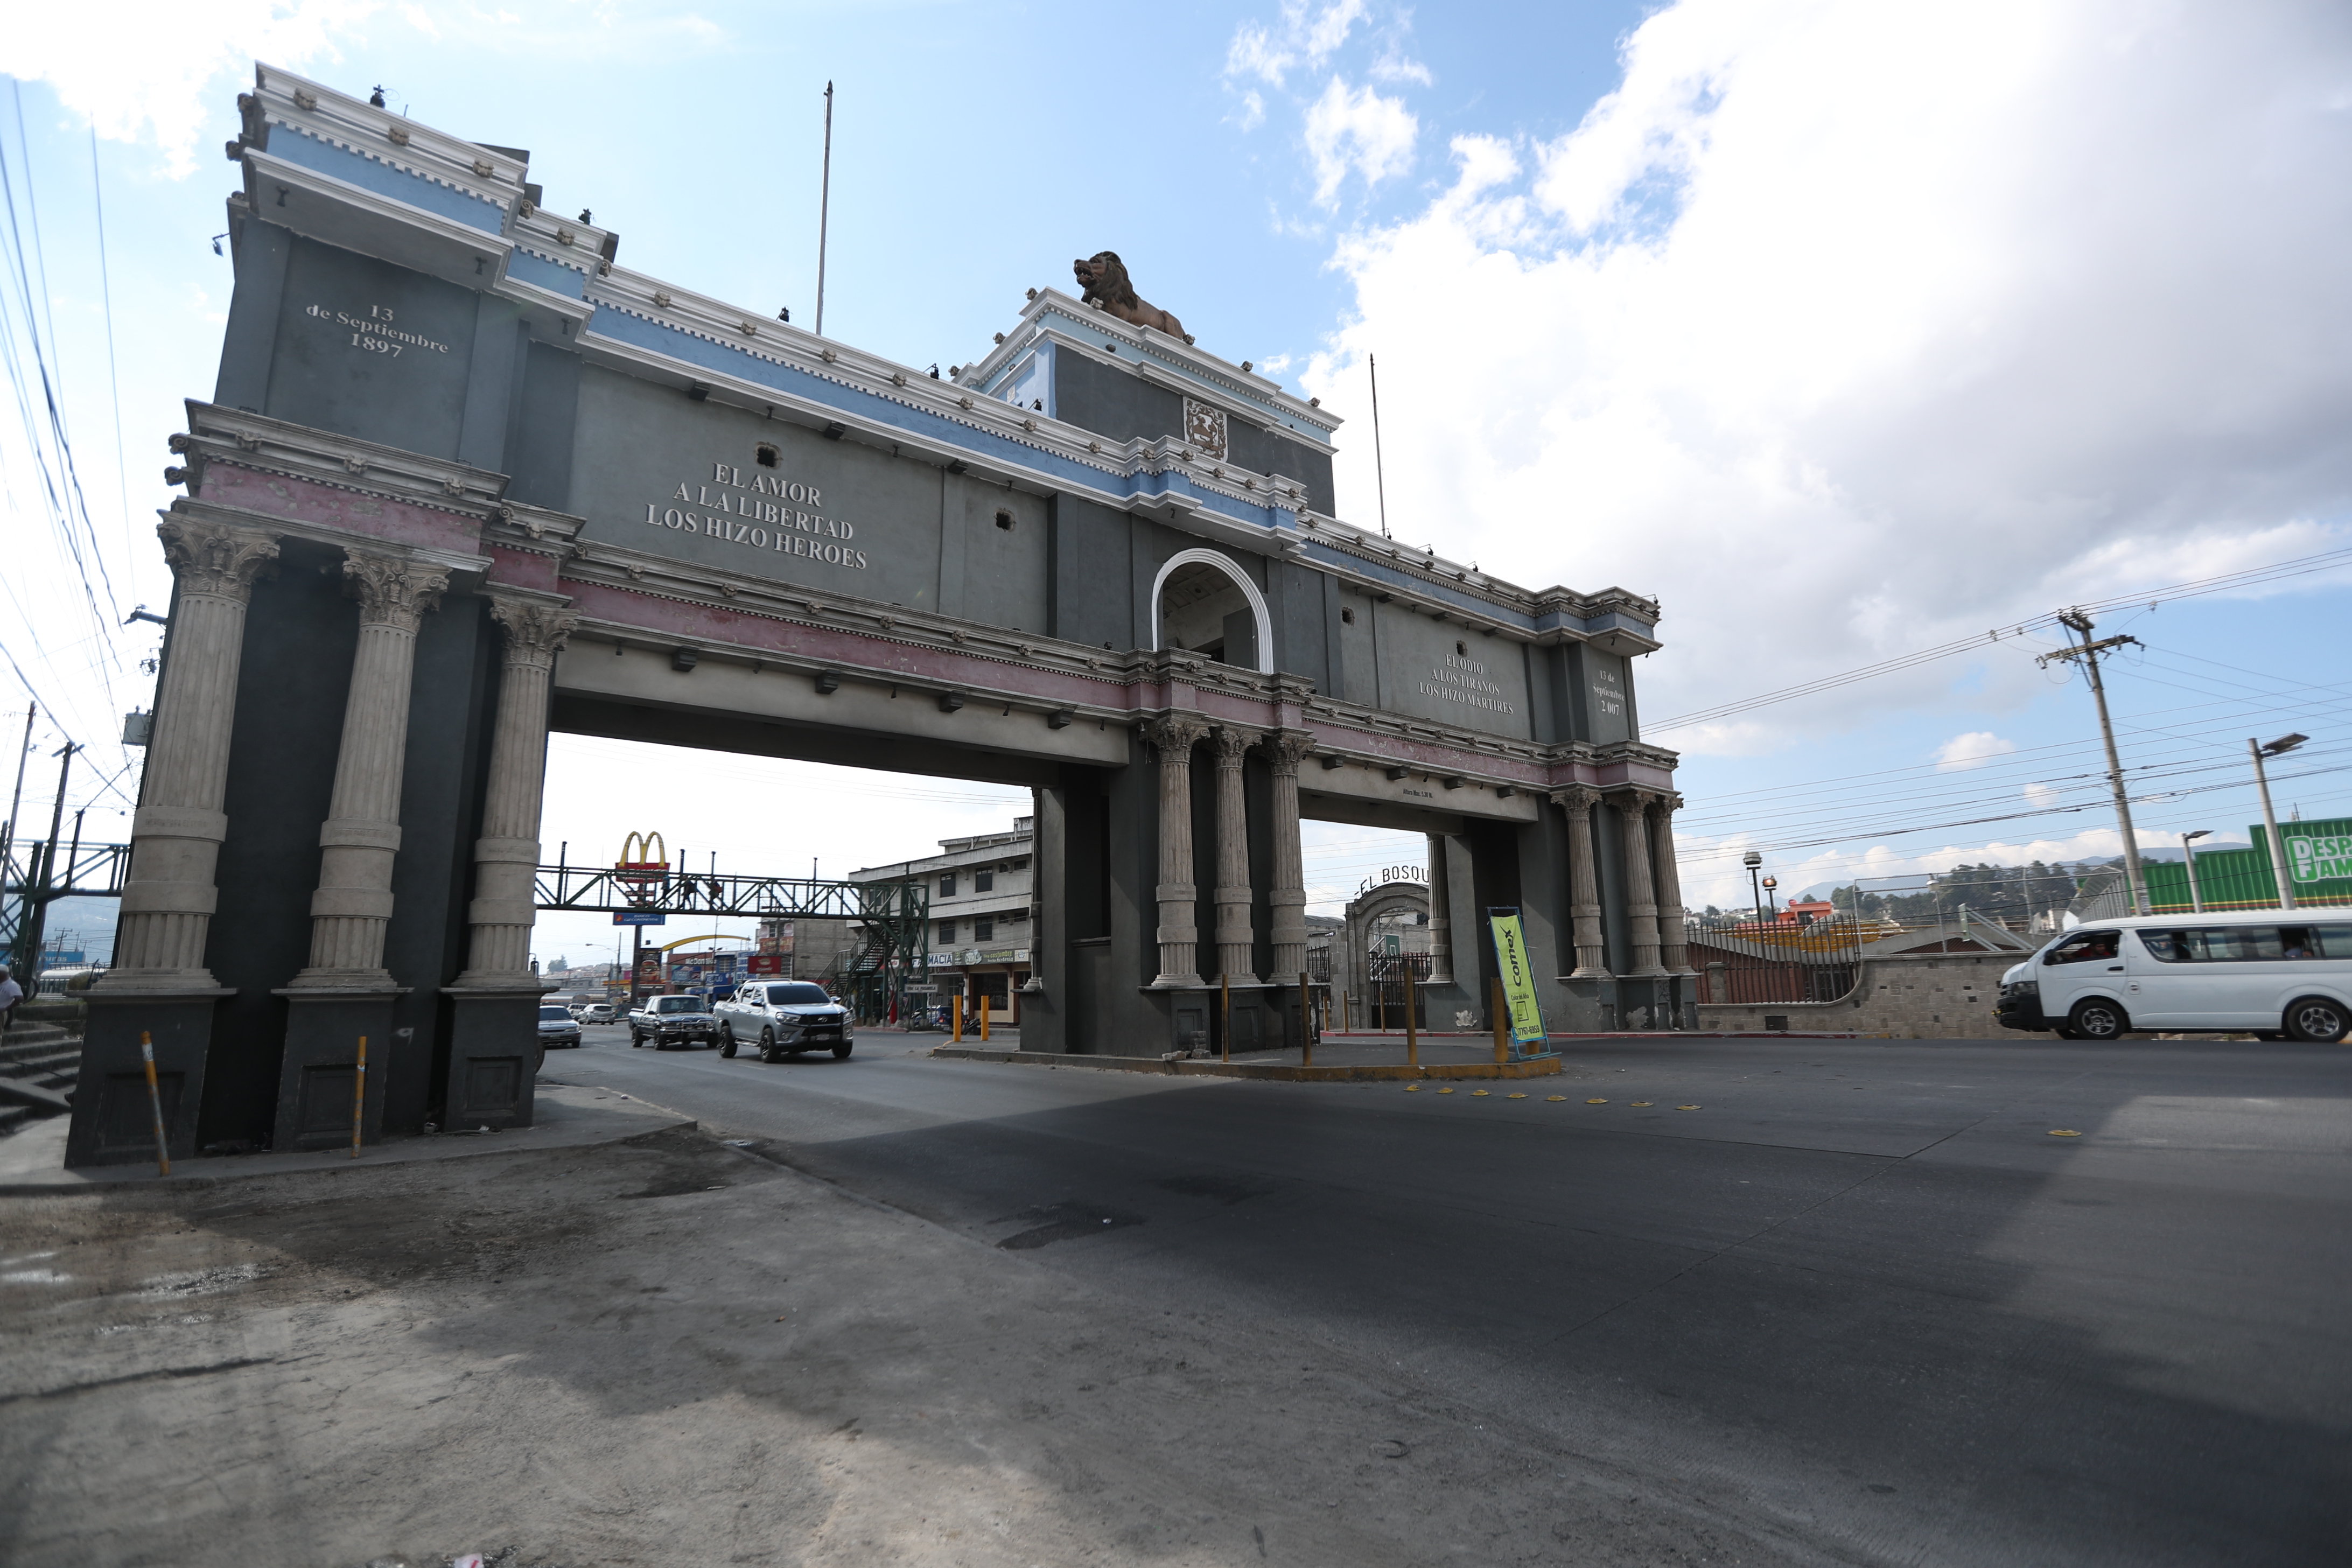 La construcción del arco se finalizó en el 2007 durante el gobierno municipal del alcalde Jorge Barrientos, quien actualmente es procesado por un caso de corrupción. (Foto Prensa Libre: María Longo) 